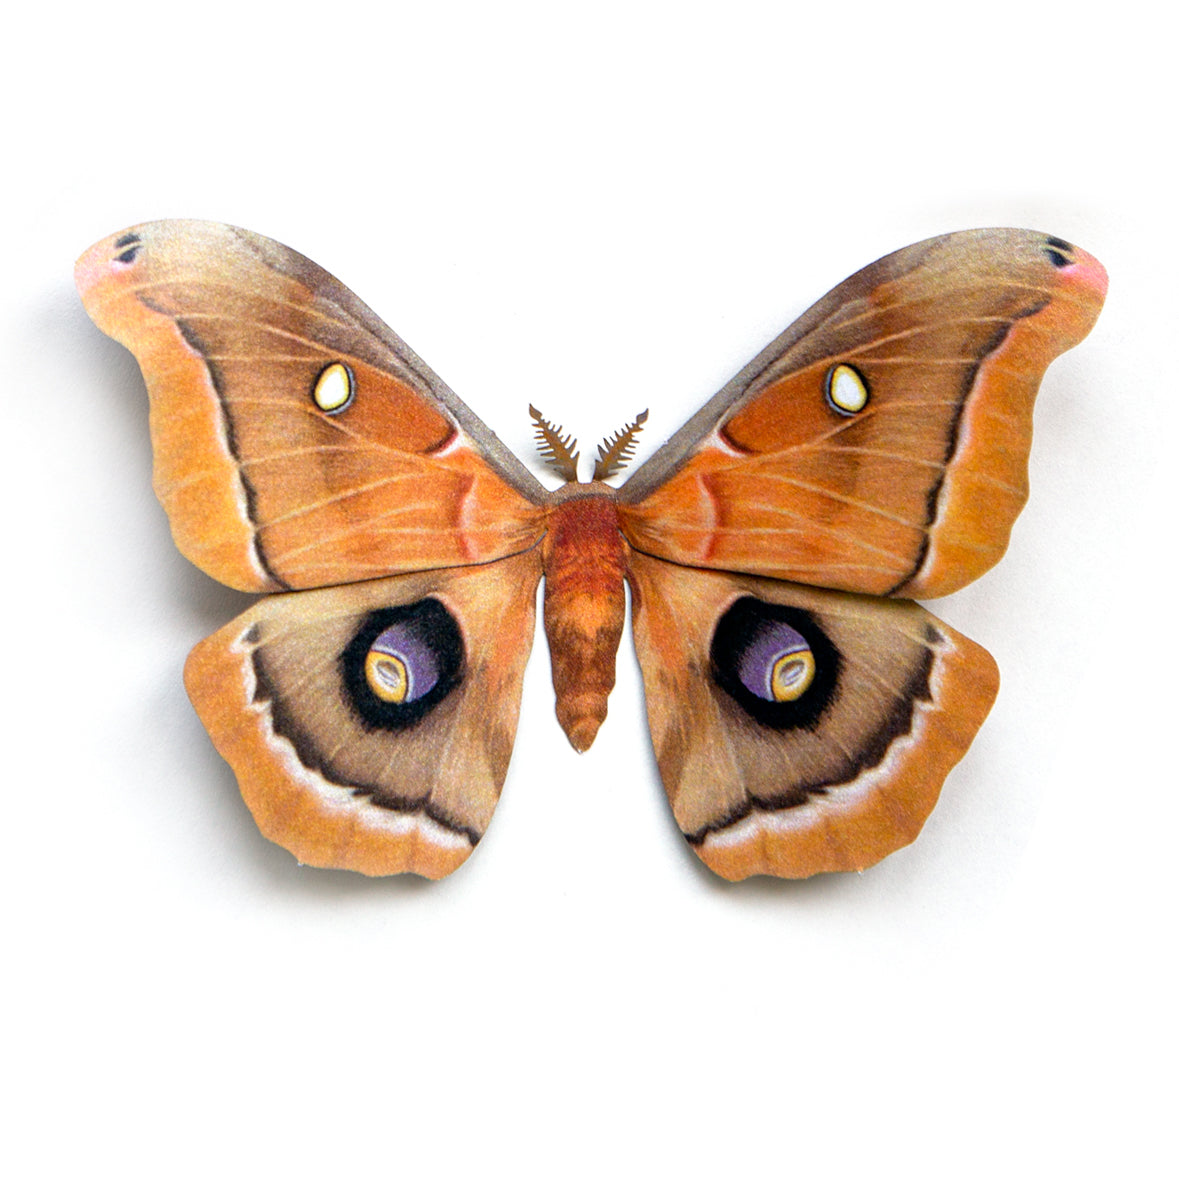 'Polyphemus' moth